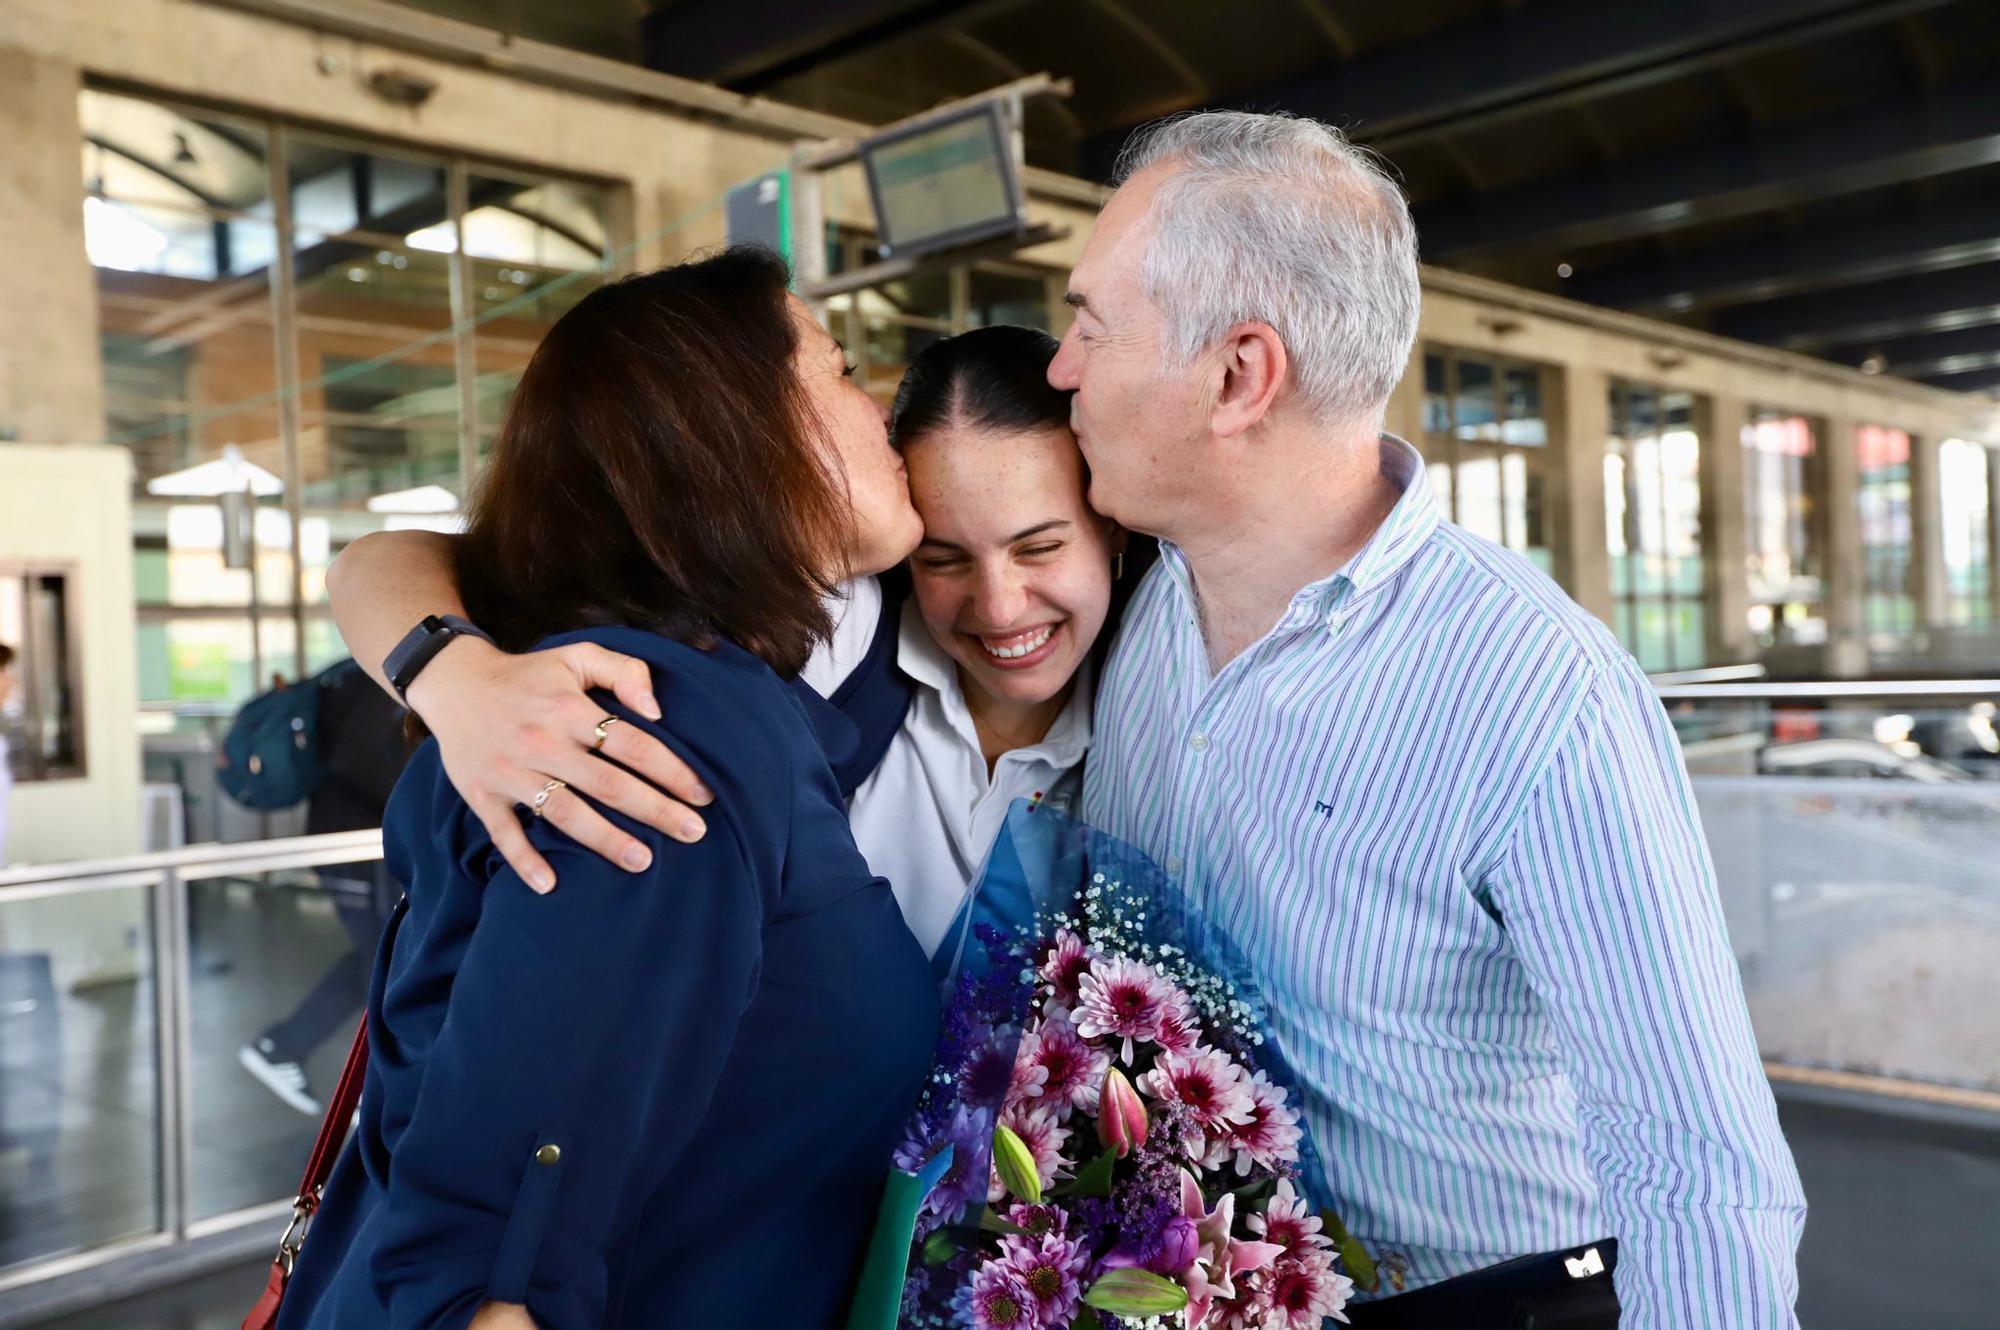 La llegada de la atleta olímpica Carmen Avilés a Córdoba, en imágenes